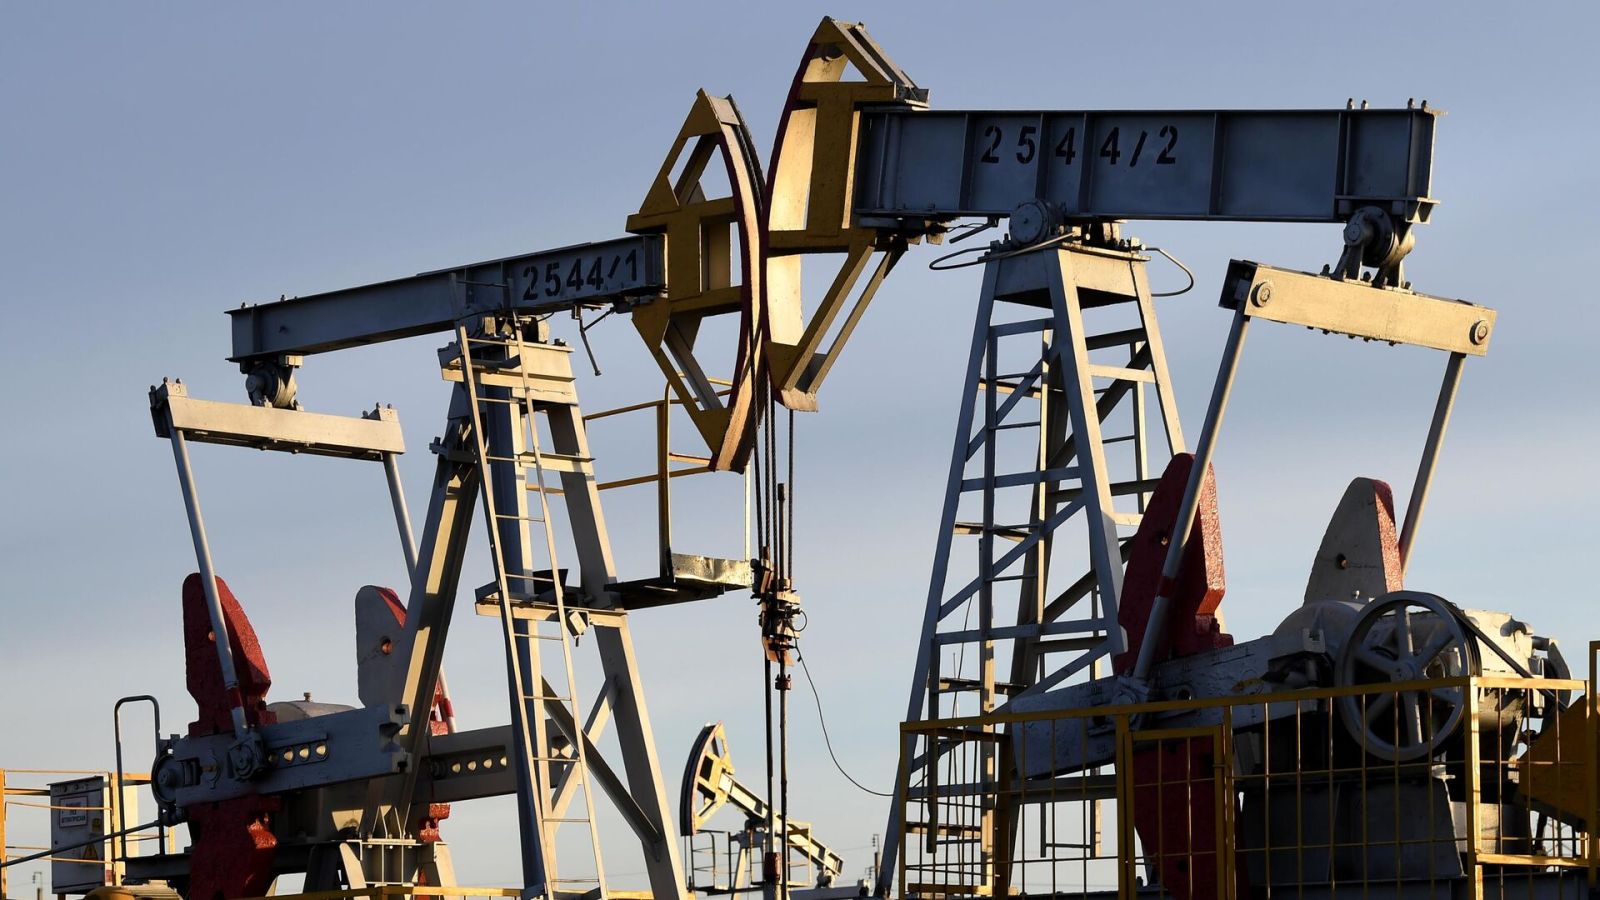 Qlobal neft tələbi gündə 2 milyon barel artacaq - PROQNOZ